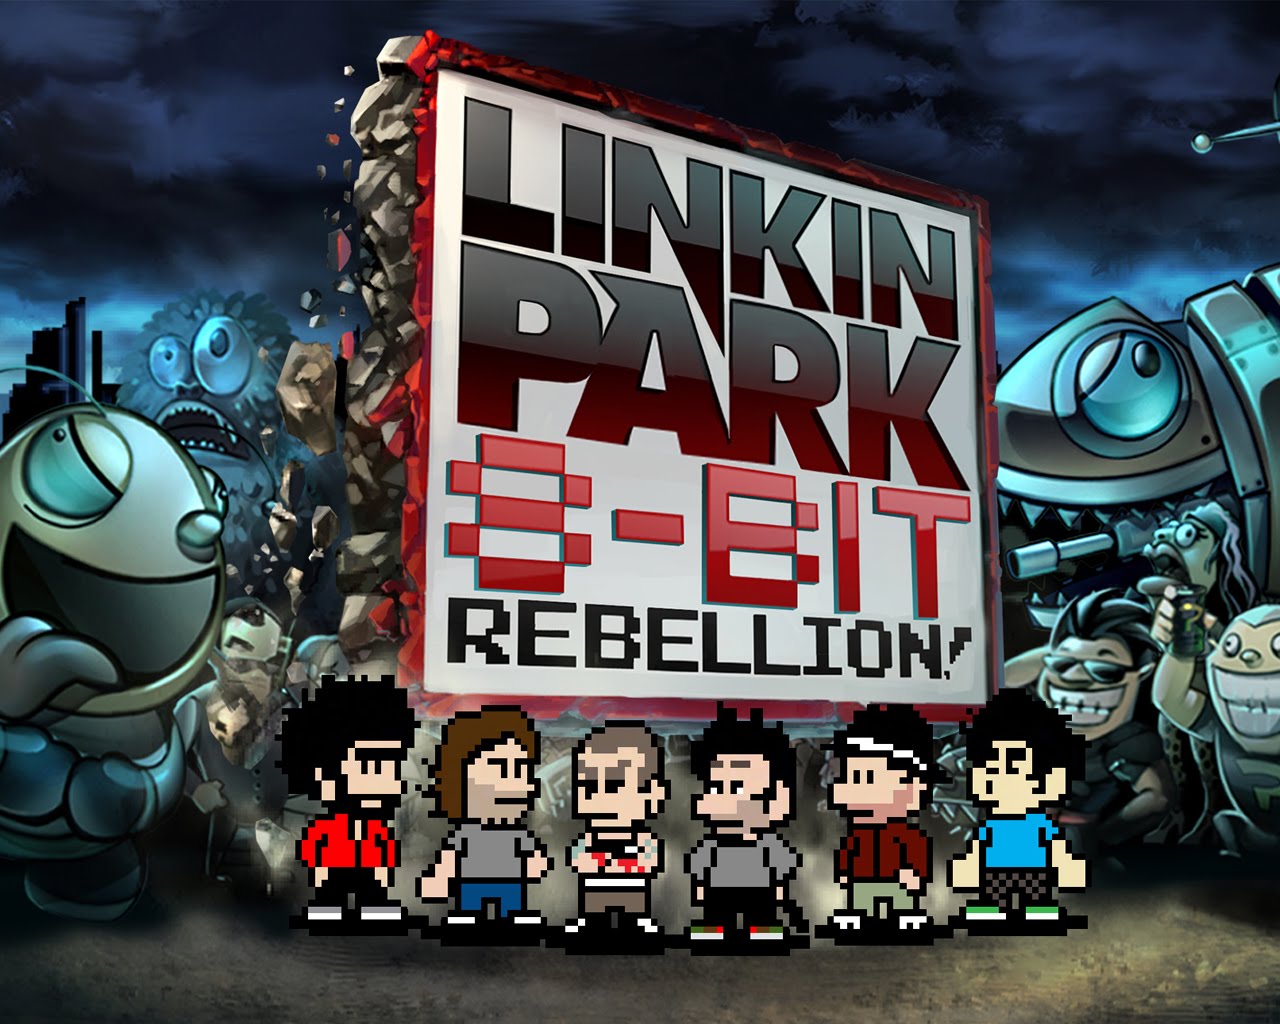 Linkin park 8 bit rebellion 2017 iphone ipa